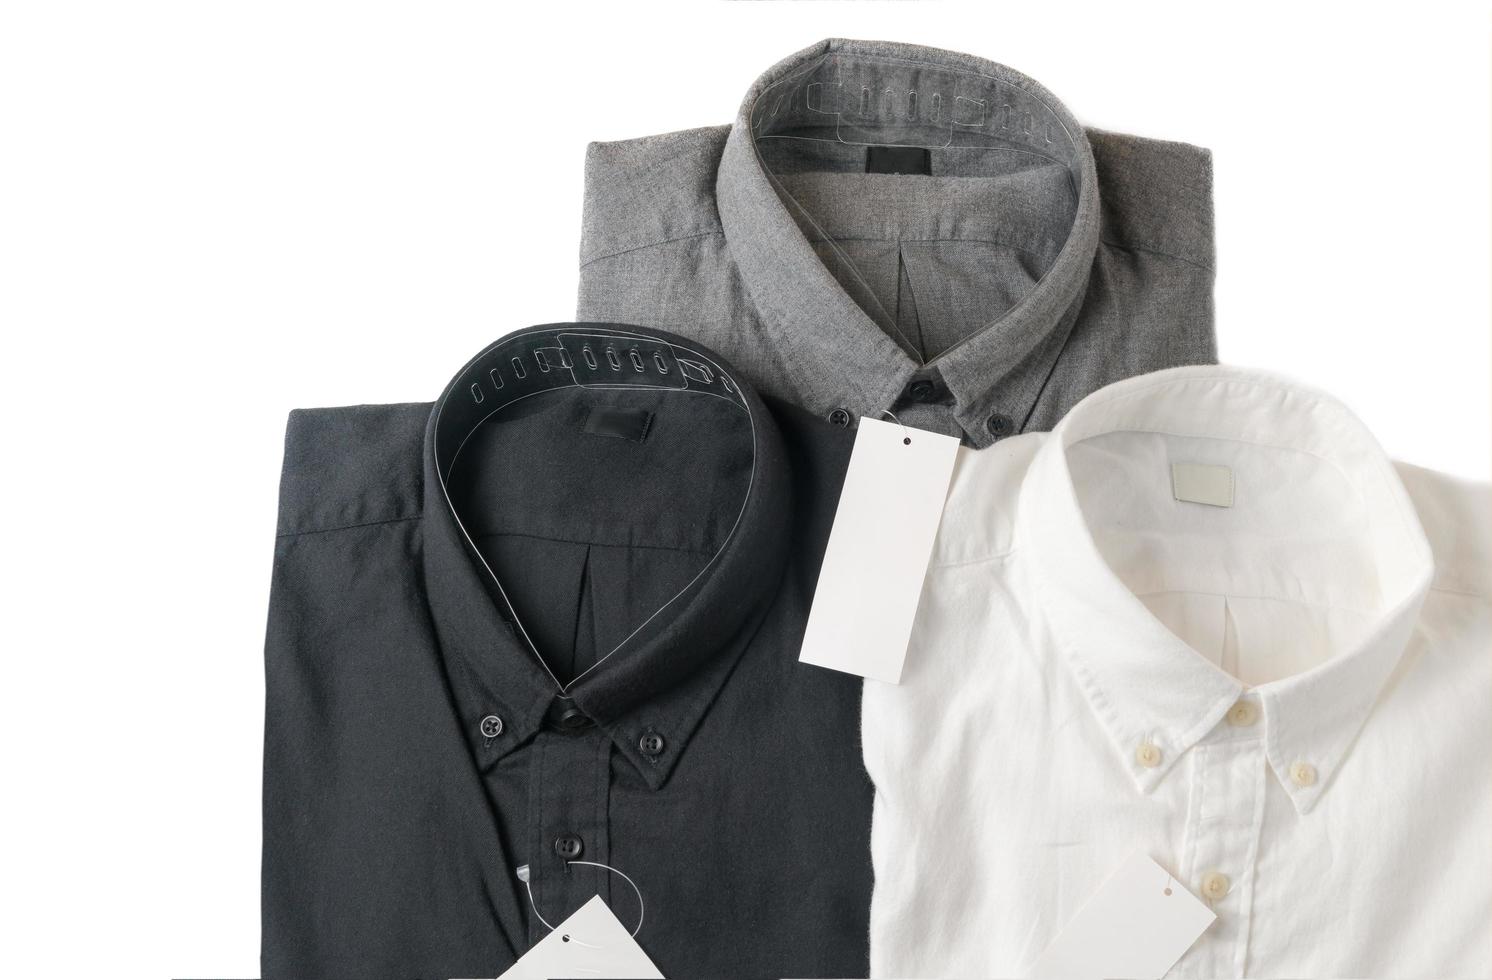 bianca, grigio e nero camicia con vuoto prezzo etichetta foto